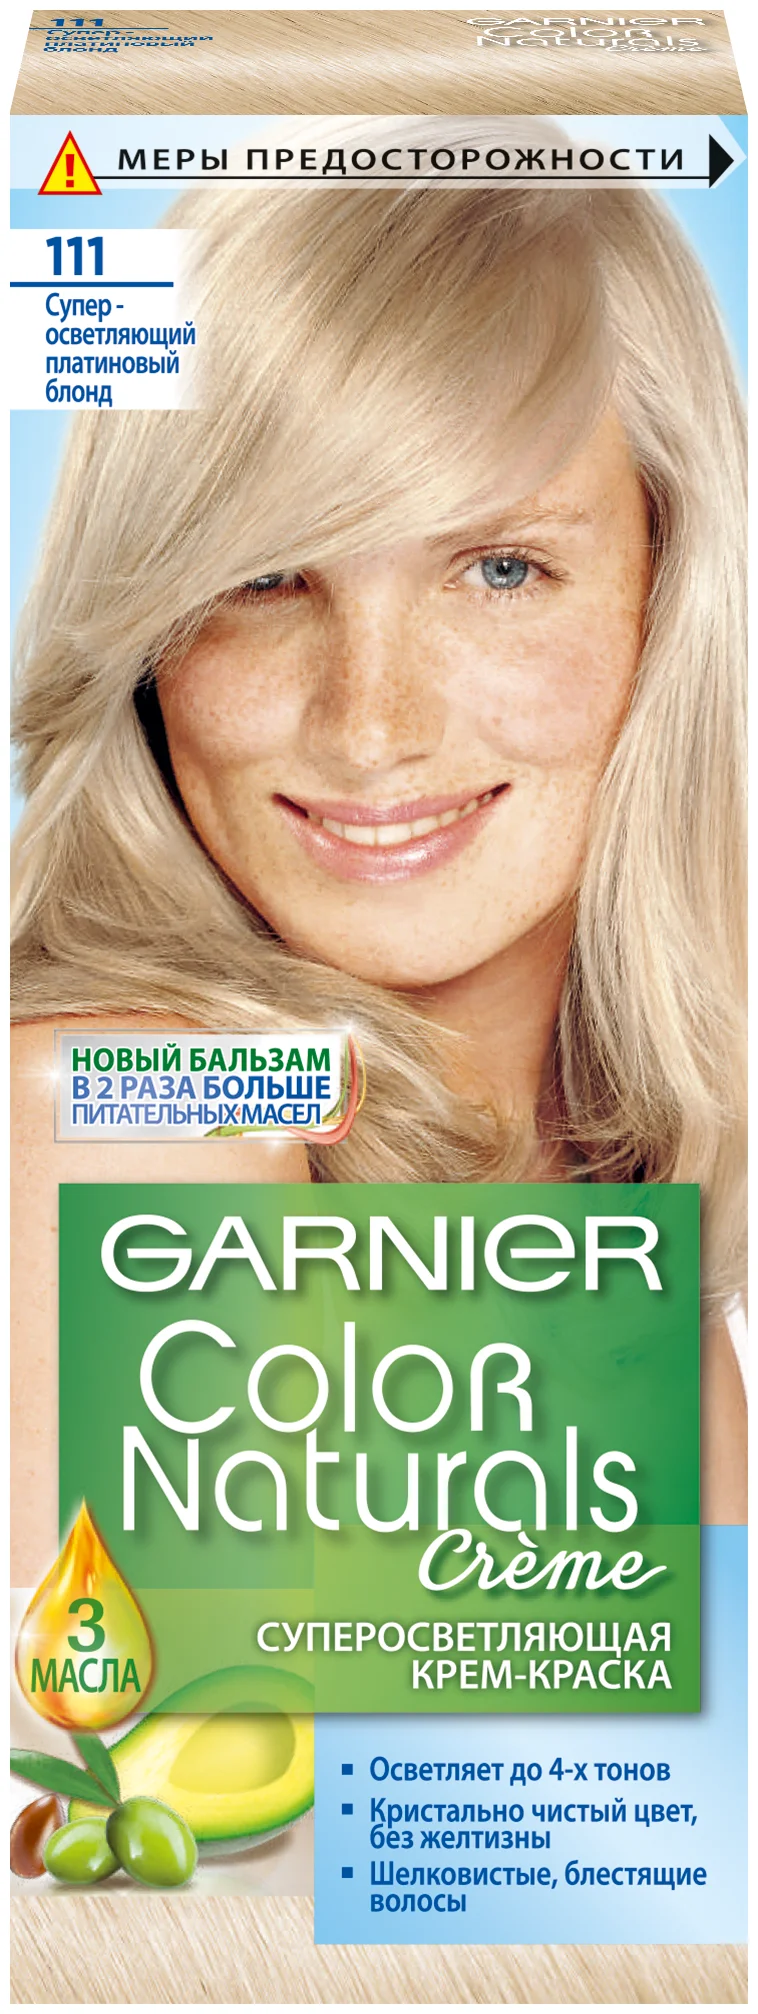 GARNIER Color Naturals "Суперосветляющая крем-краска" - масла и экстракты: оливковое масло, масло авокадо, комплекс масел, масло ши (карите)